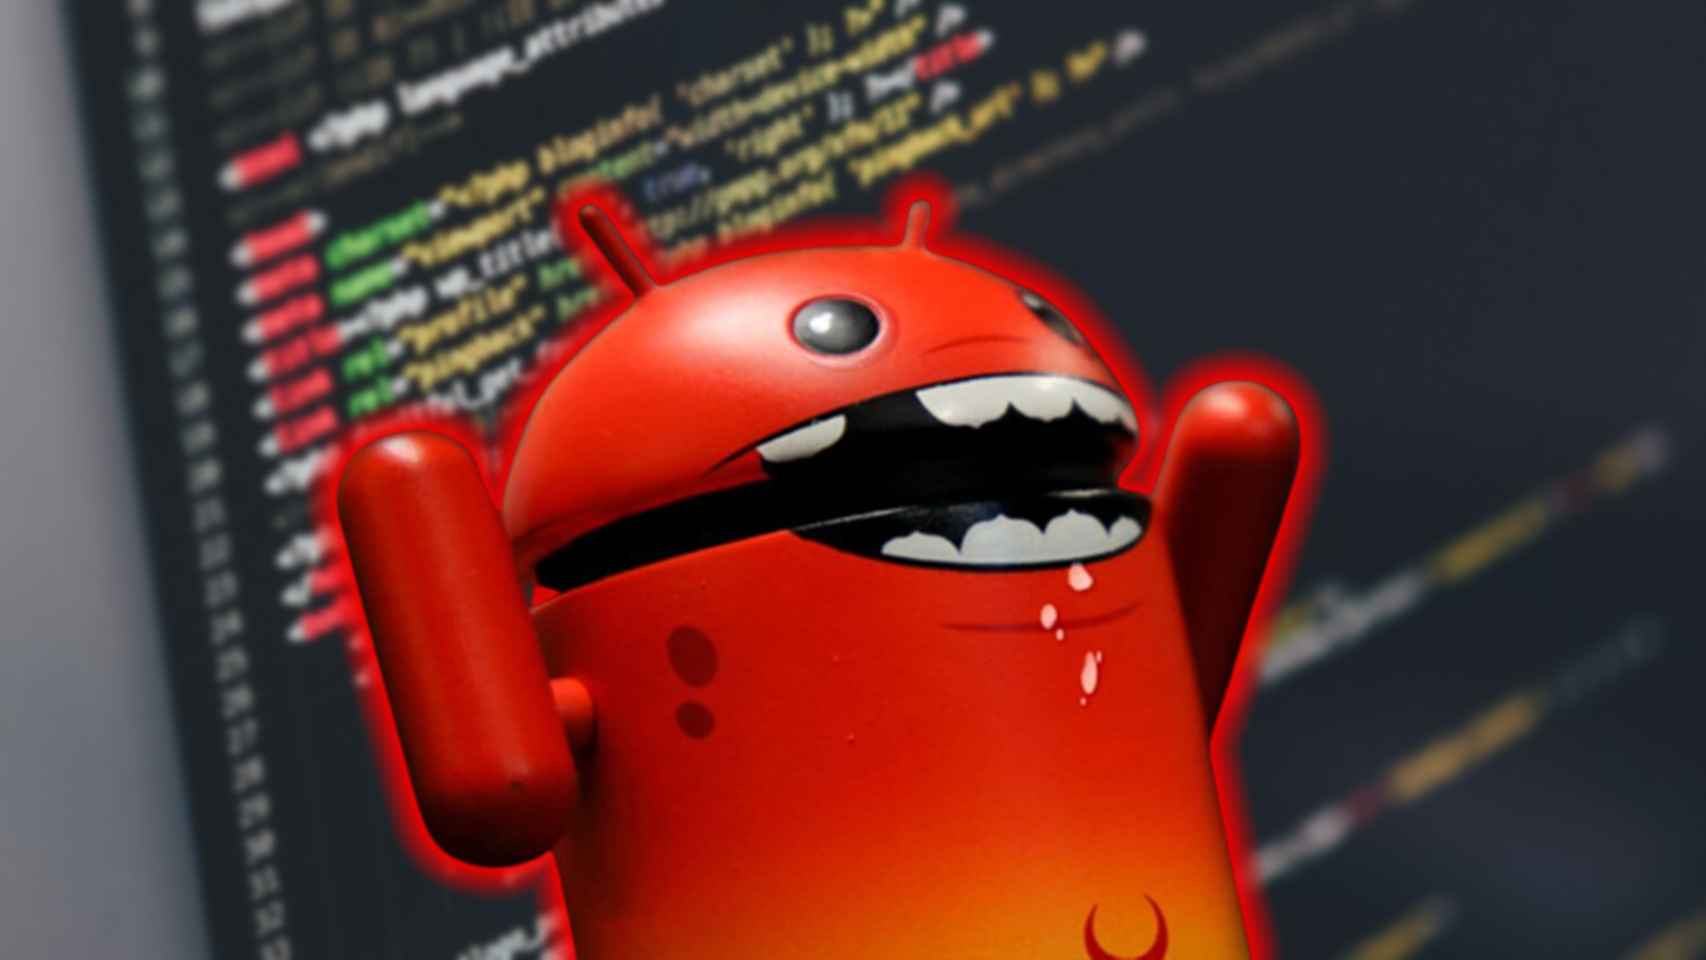 Muñeco de Android en rojo.